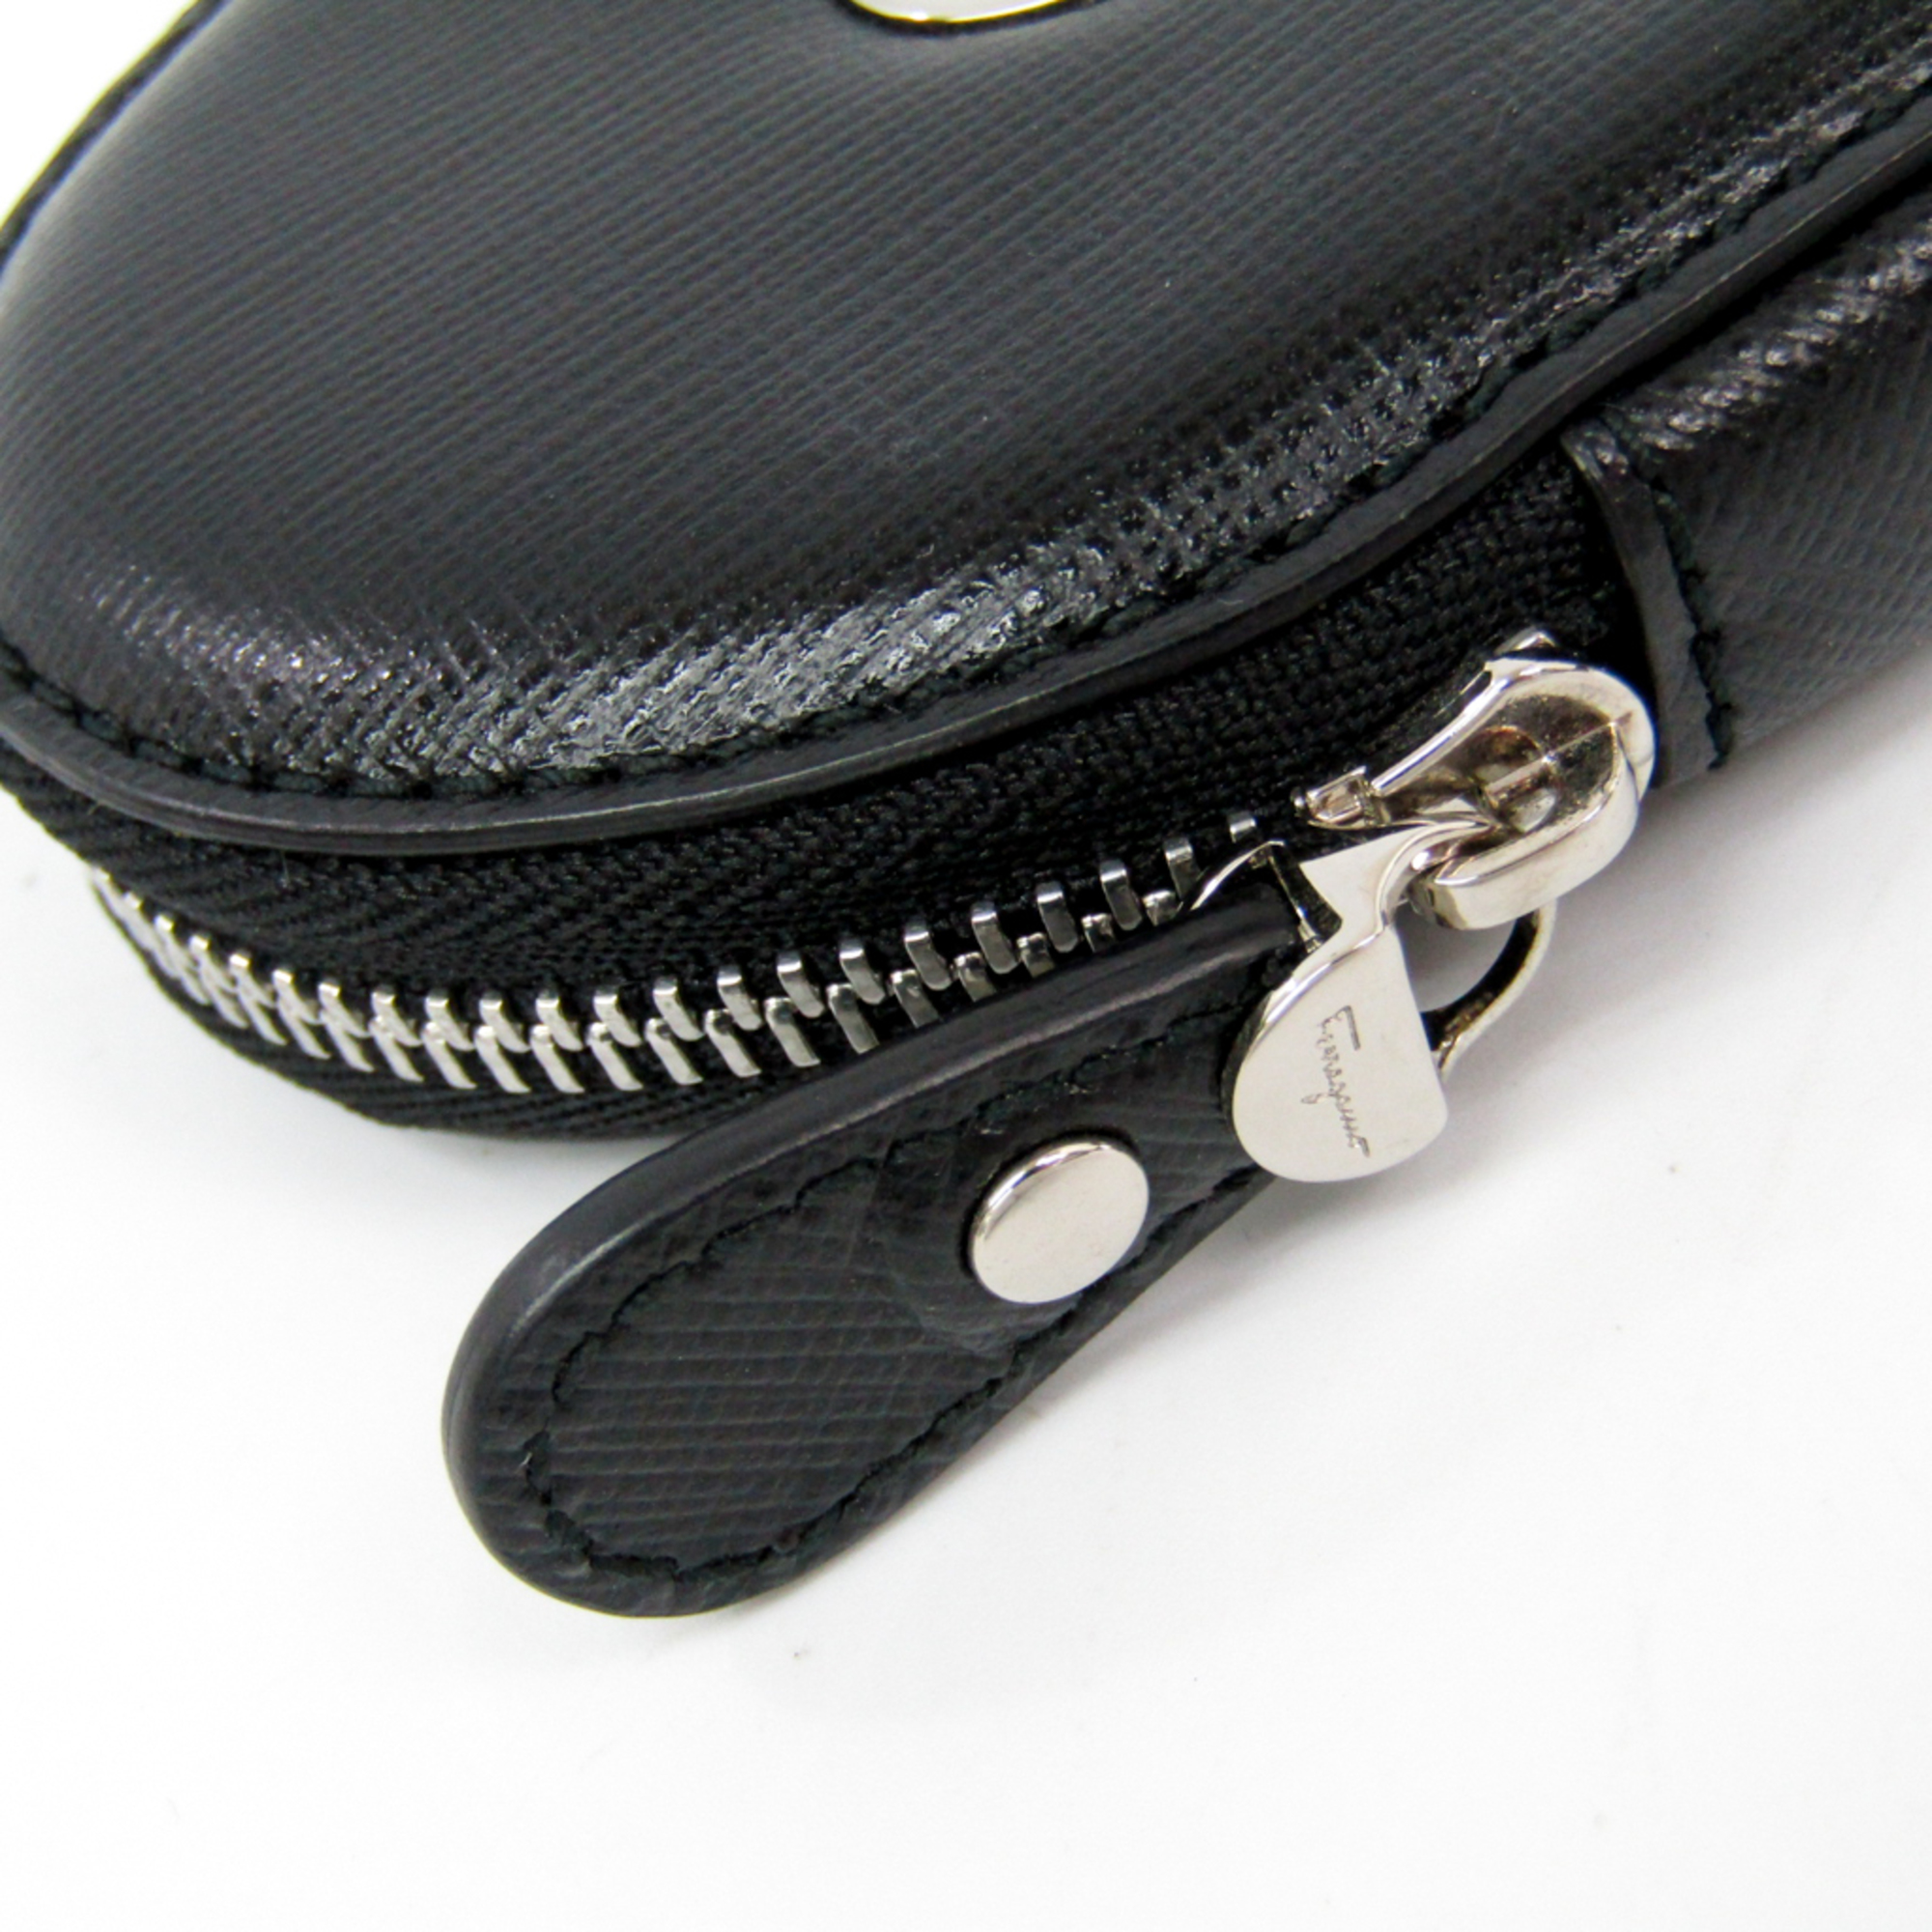 Salvatore Ferragamo Gancini 22 C113 Women's Leather Coin Purse/coin Case Black